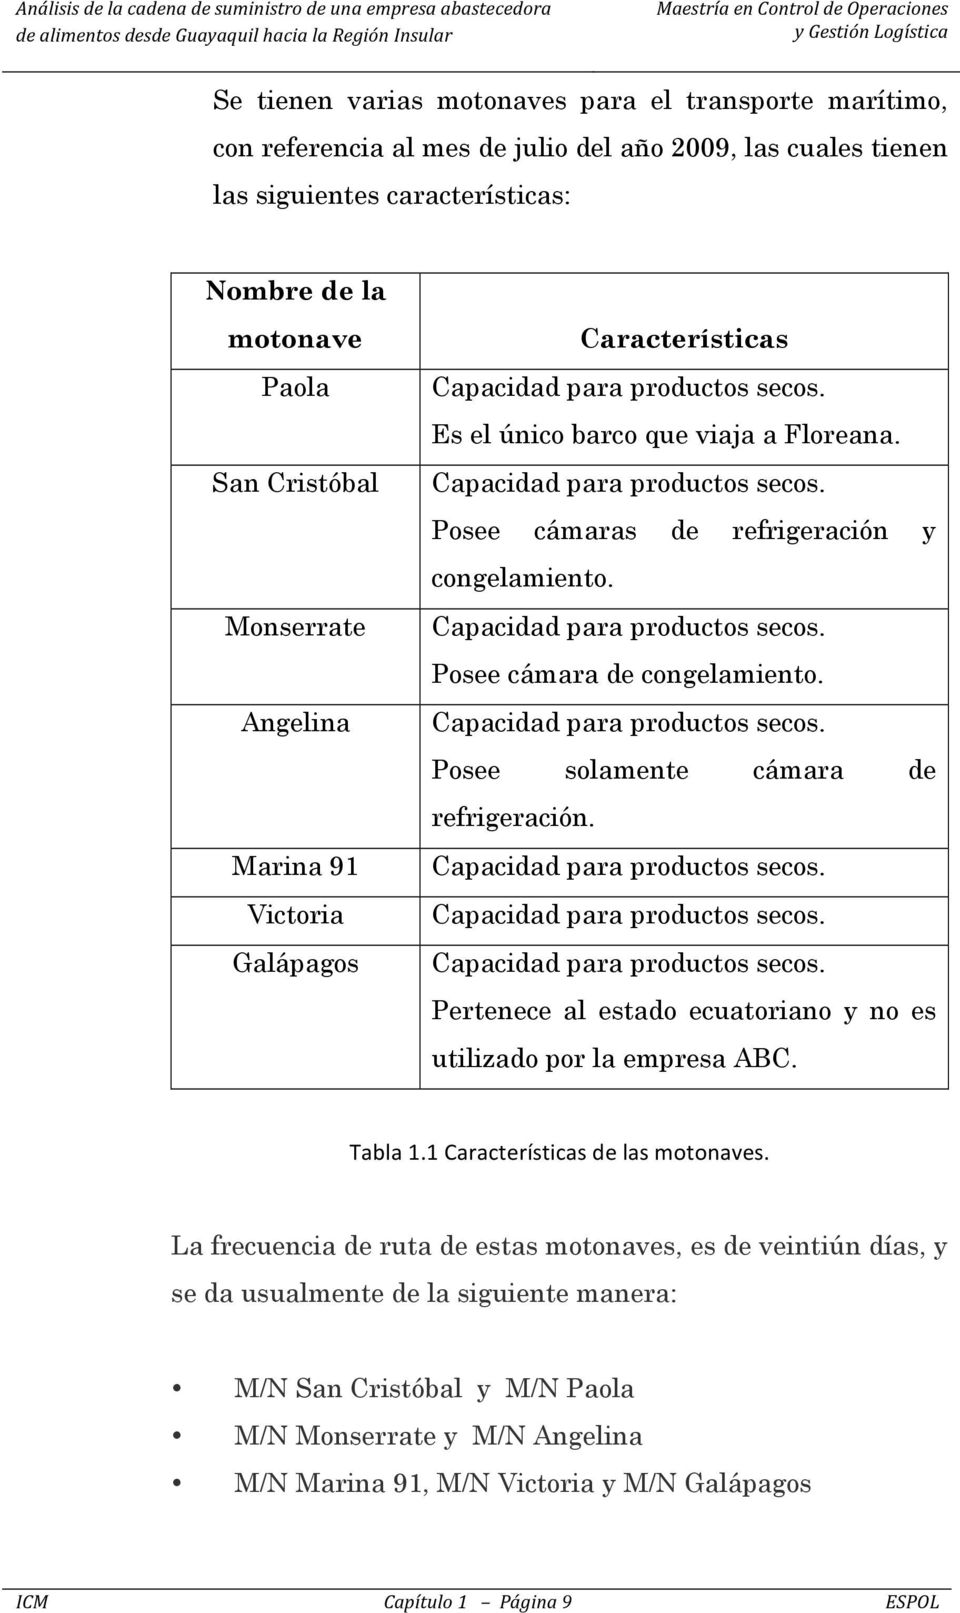 Posee solamente cámara de refrigeración. Pertenece al estado ecuatoriano y no es utilizado por la empresa ABC. Tabla 1.1 Características de las motonaves.